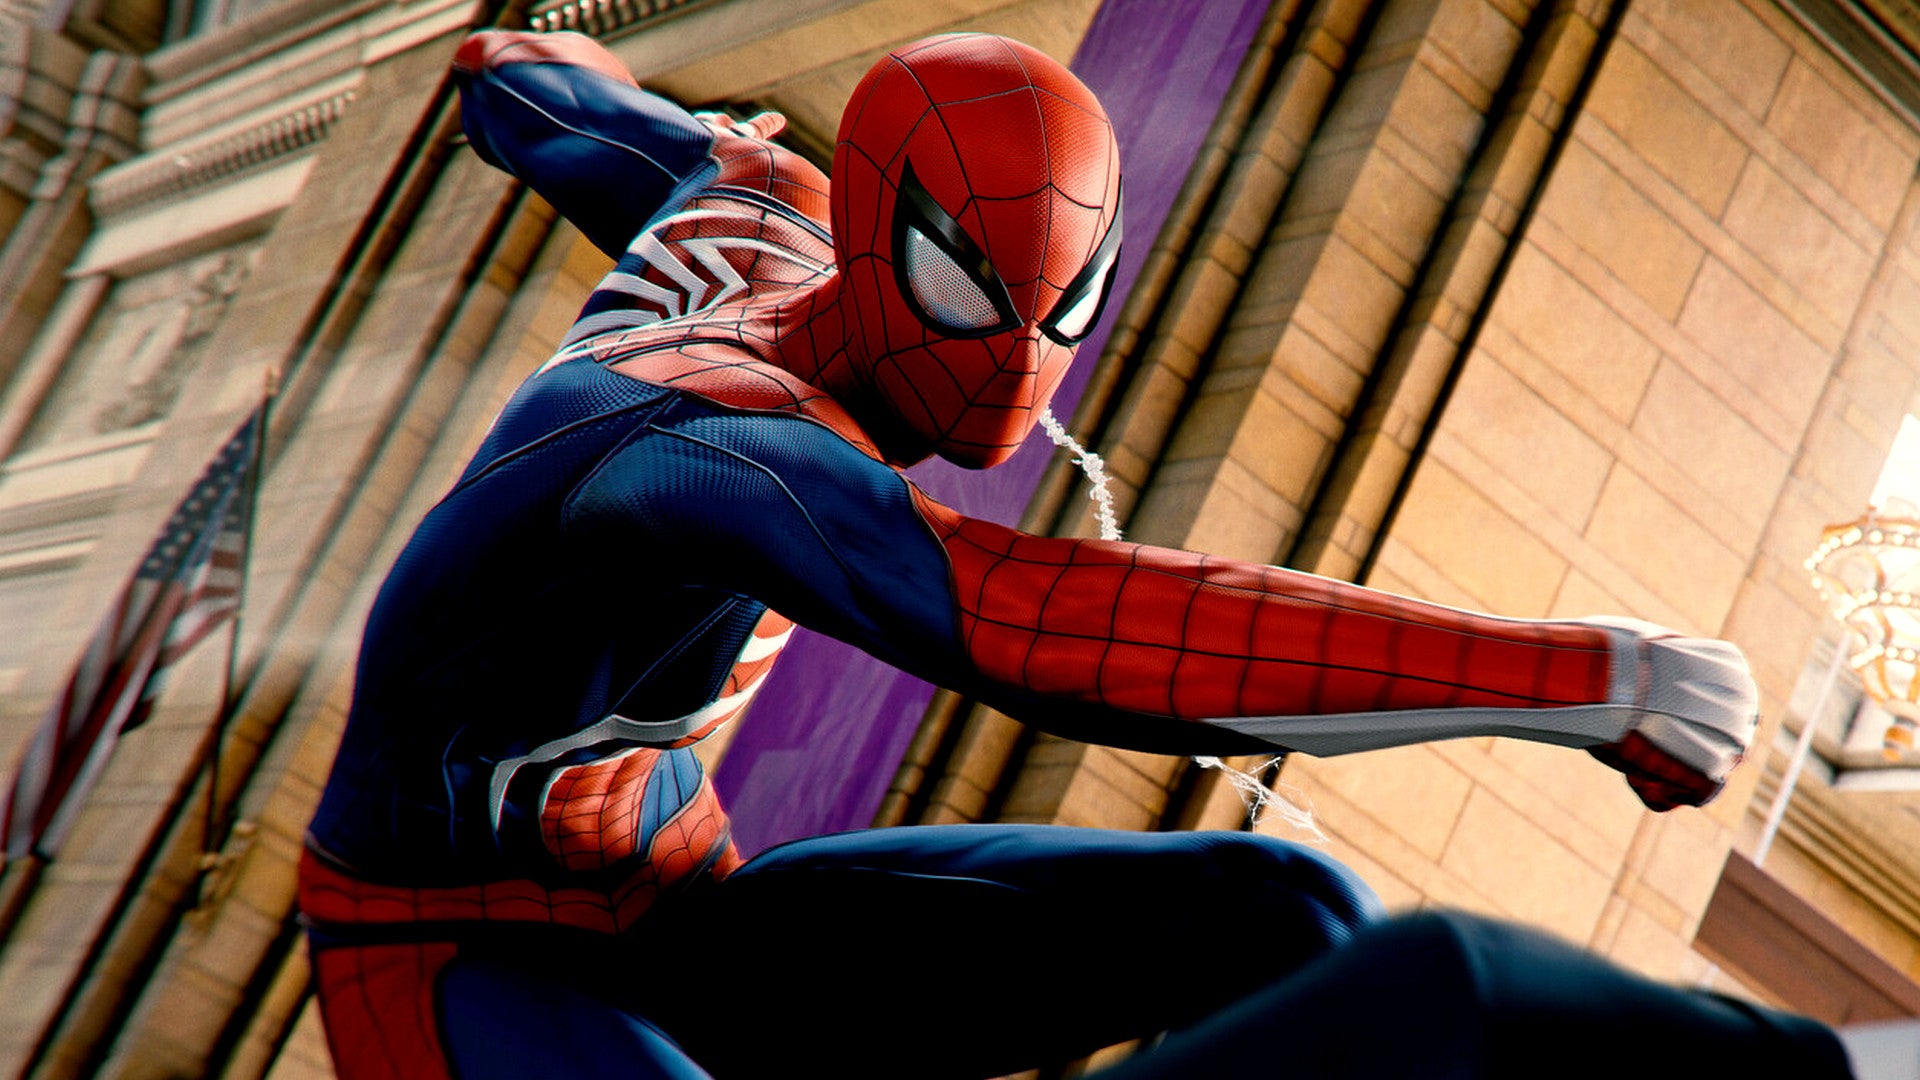 Bilder zu Spider-Man PC: Erstes Update löst Raytracing-Probleme und mehr - Alle Patch Notes